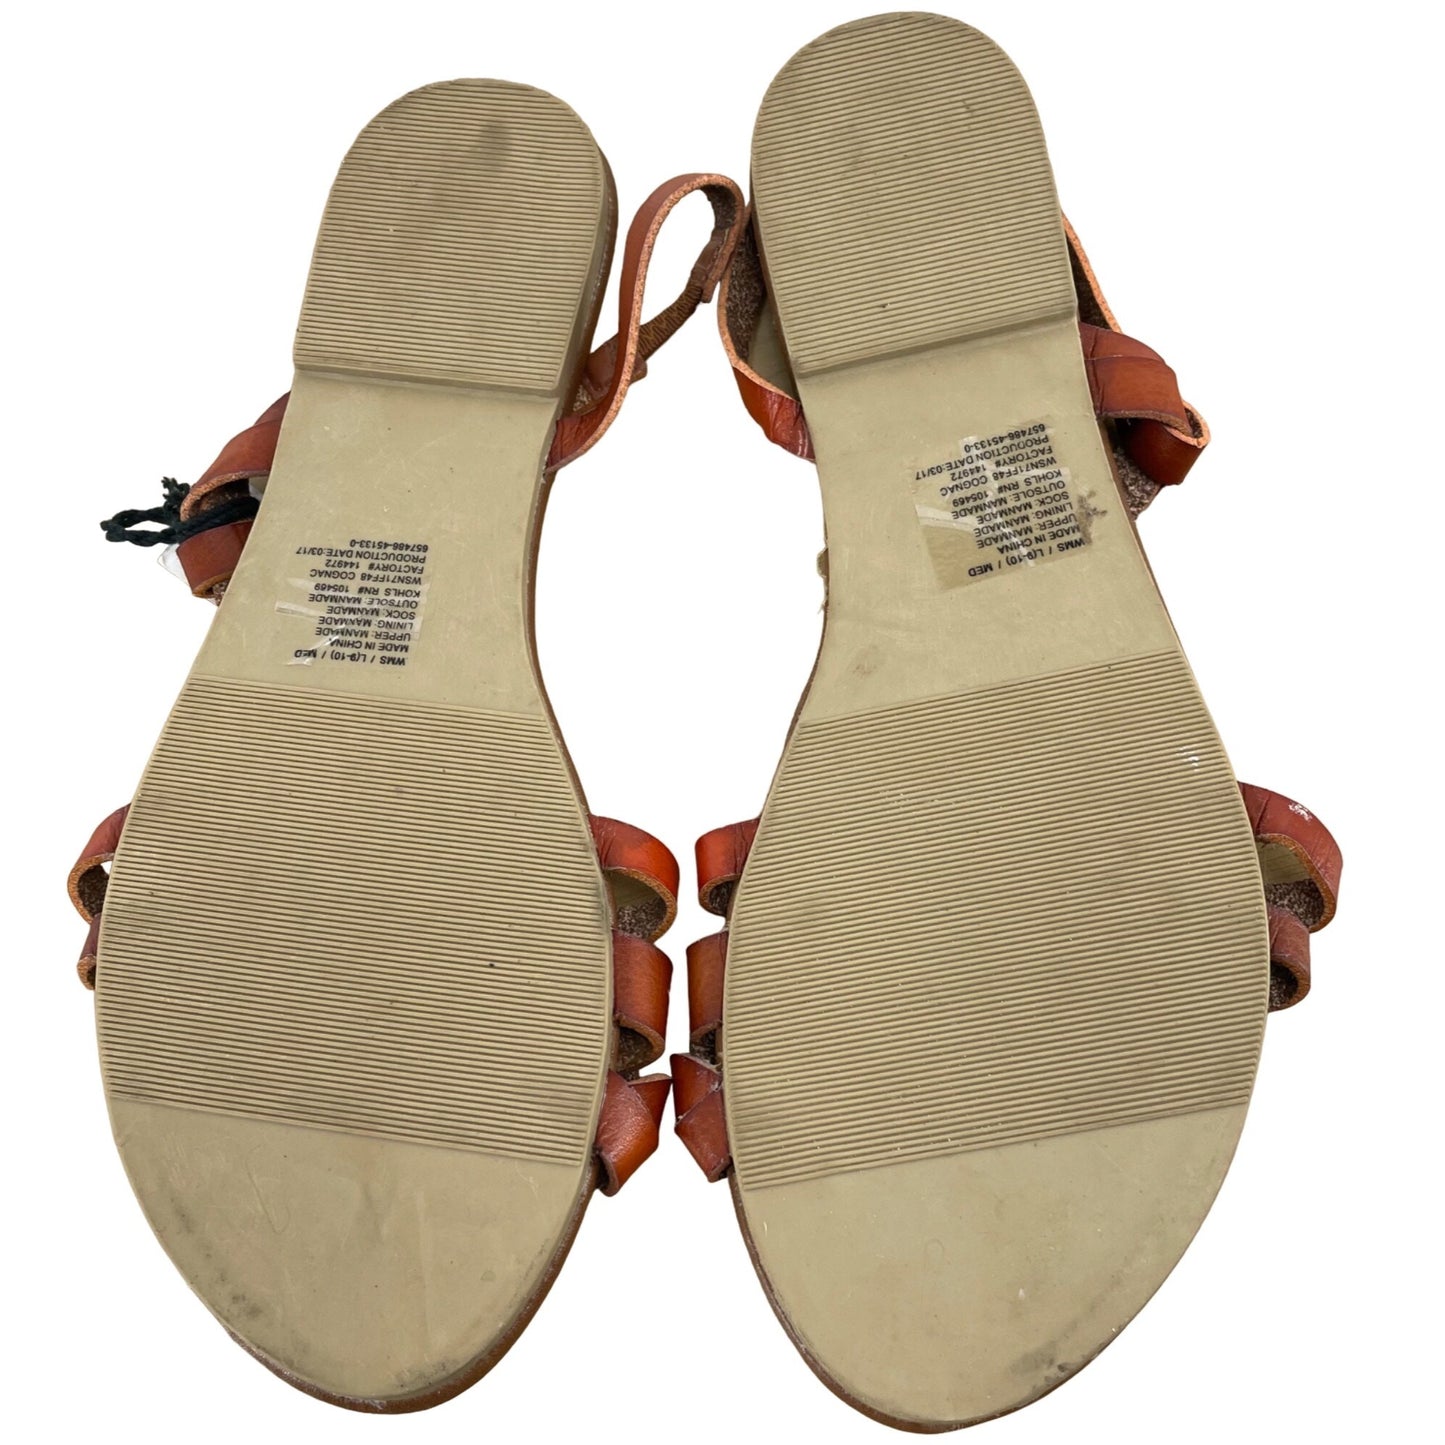 NWT Sonoma Women's Size L 9/10 Faux Leather Cognac Sandals